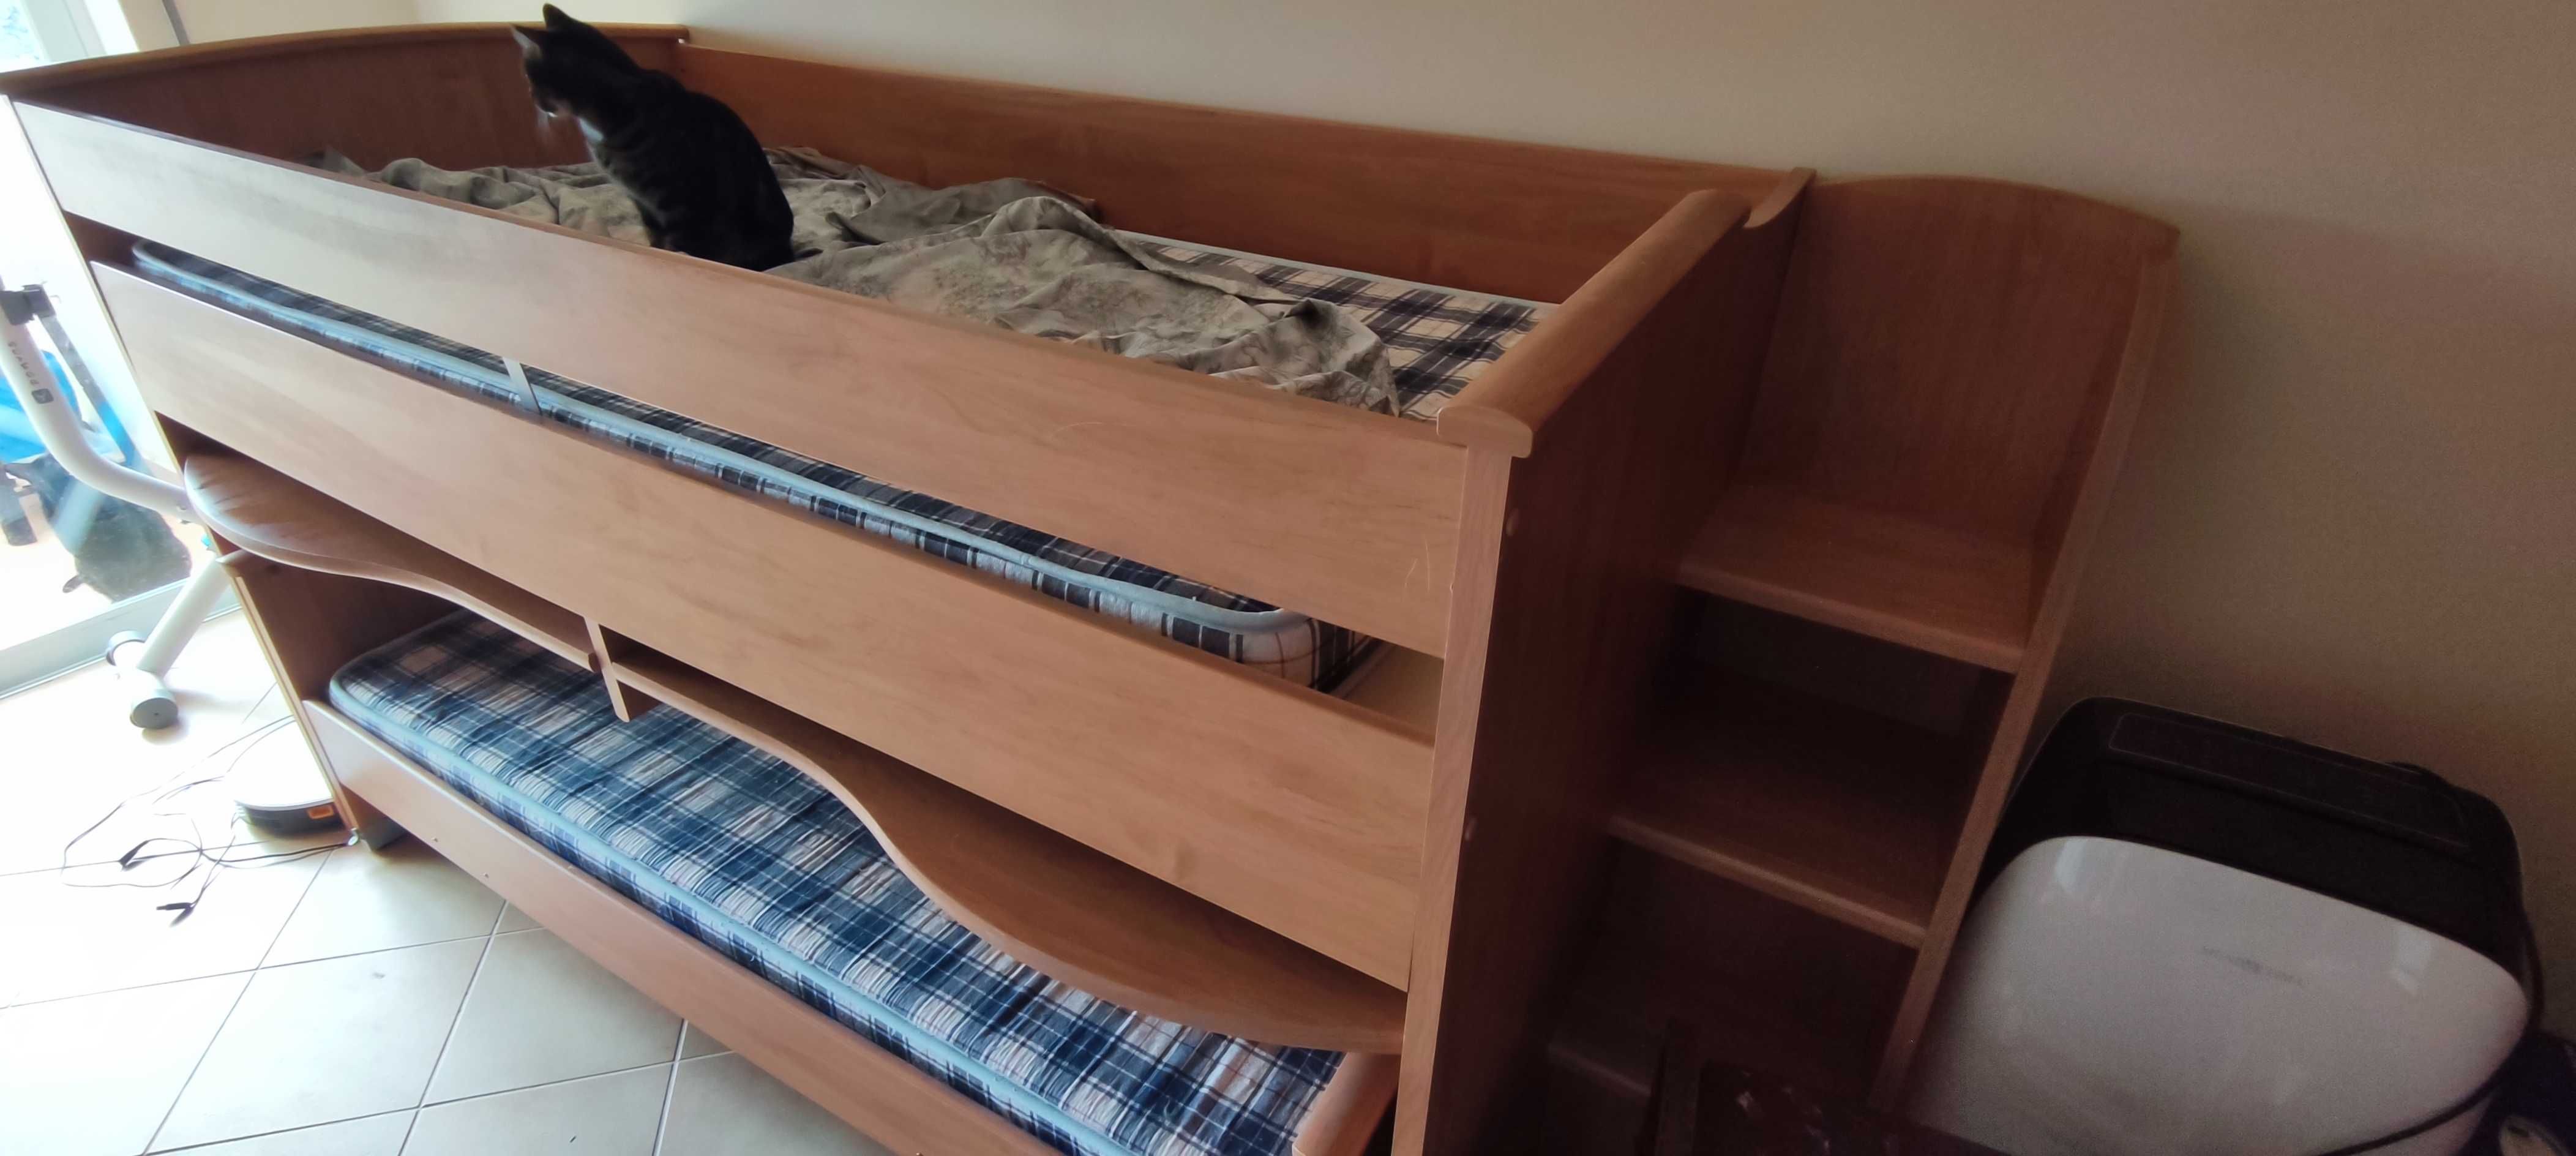 Beliche com secretária e cama inferior removível